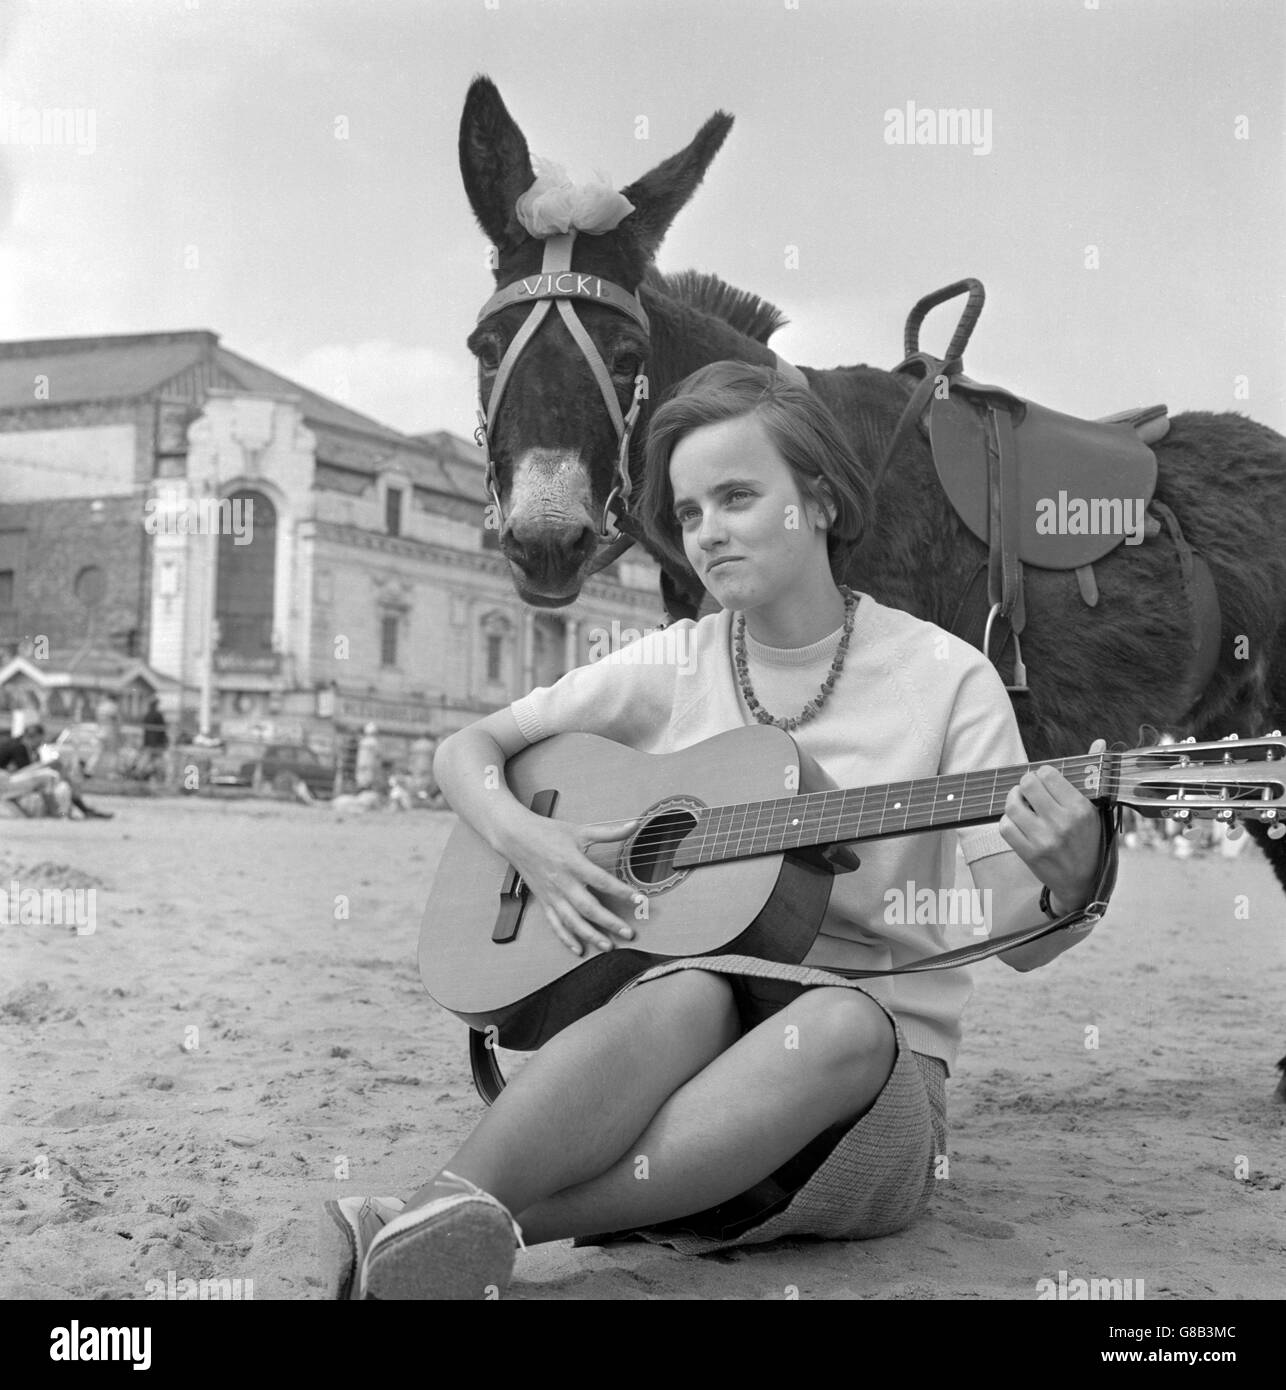 Vicki El burro está encantado por la música hecha por el estudiante alemán Heidi Heeren en la playa de Scarborough, Yorkshire. Heidi, que estudia en Hull, es una cantante popular de los clubes populares de Yorkshire. Foto de stock